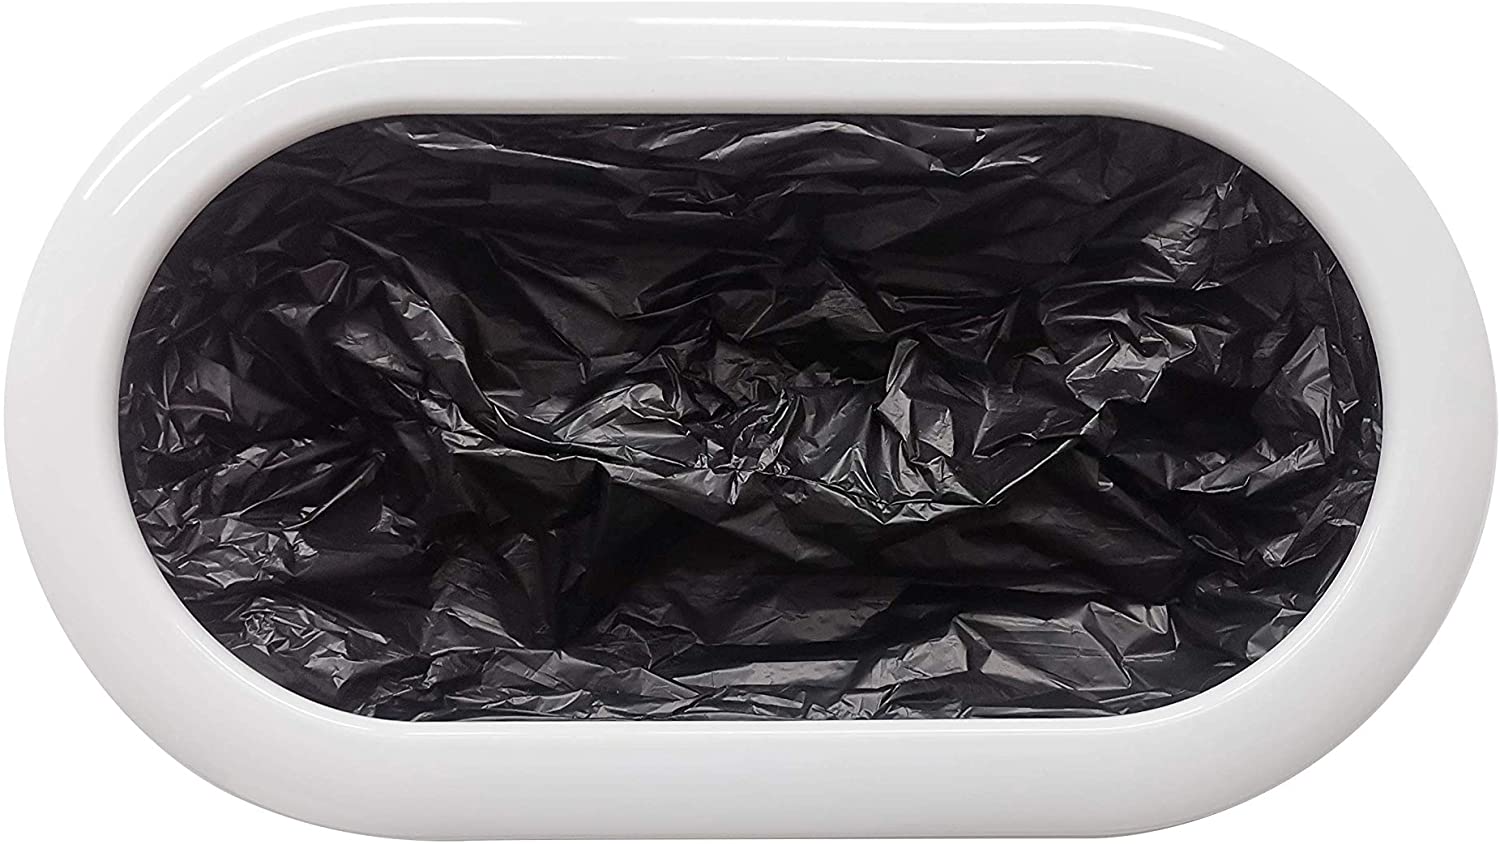 Khay đựng túi rác dành cho thùng rác thông minh Townew T3 – Bản quốc tế